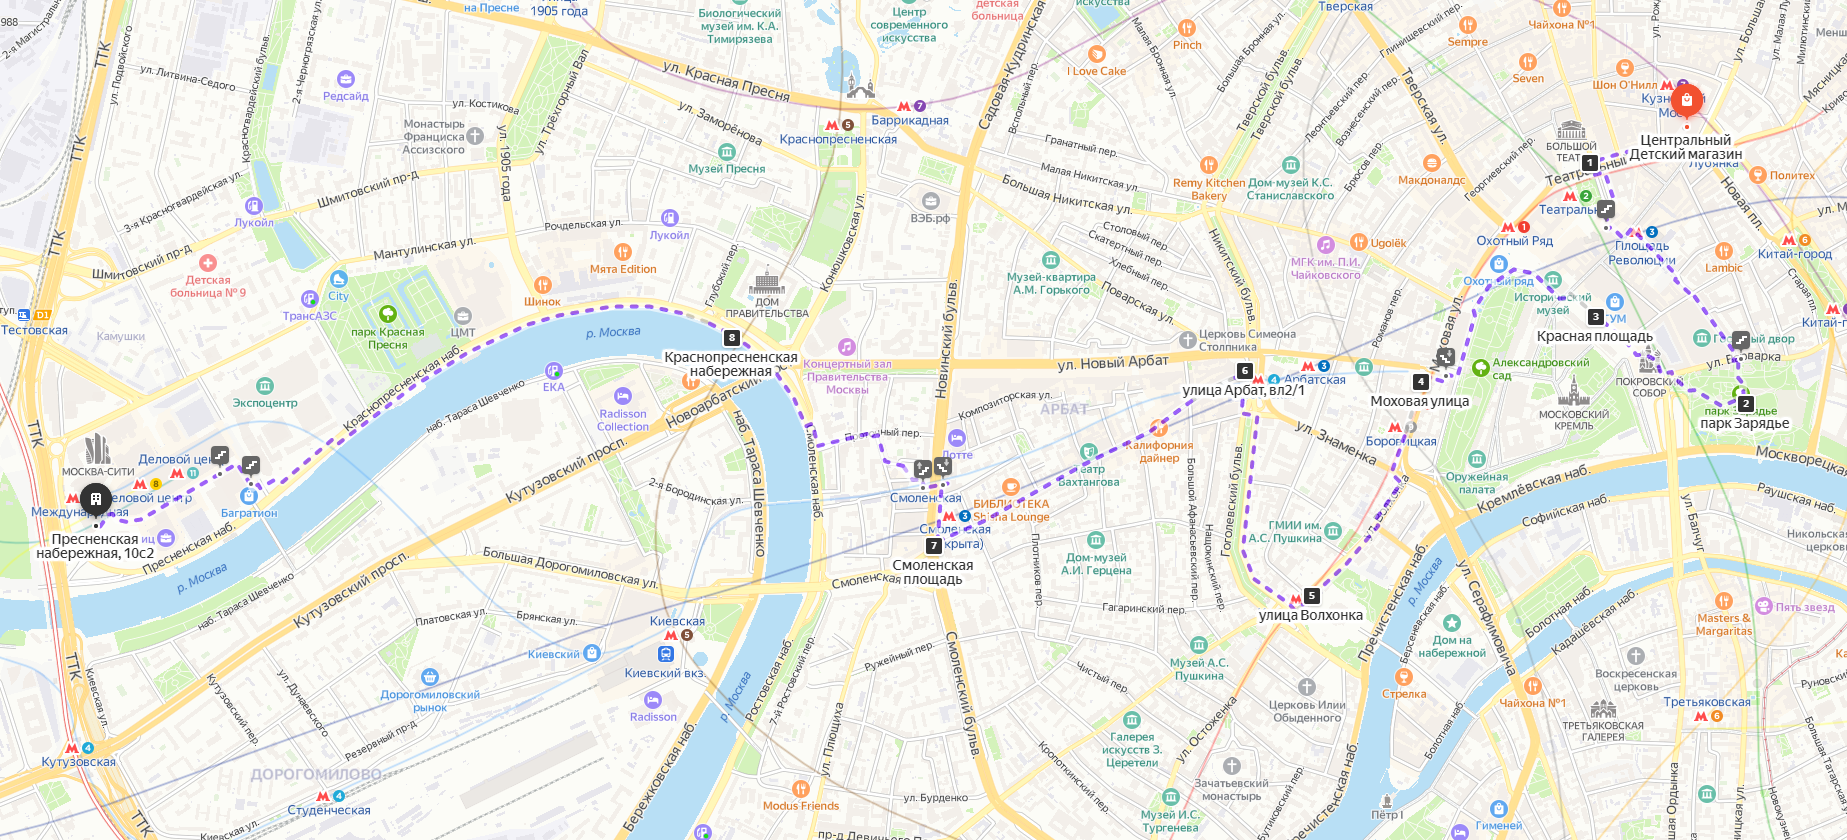 На карте Яндекс изображен один из вариантов длинного прогулочного маршрута, включающий посещение знаменитой улицы Арбат в Москве.